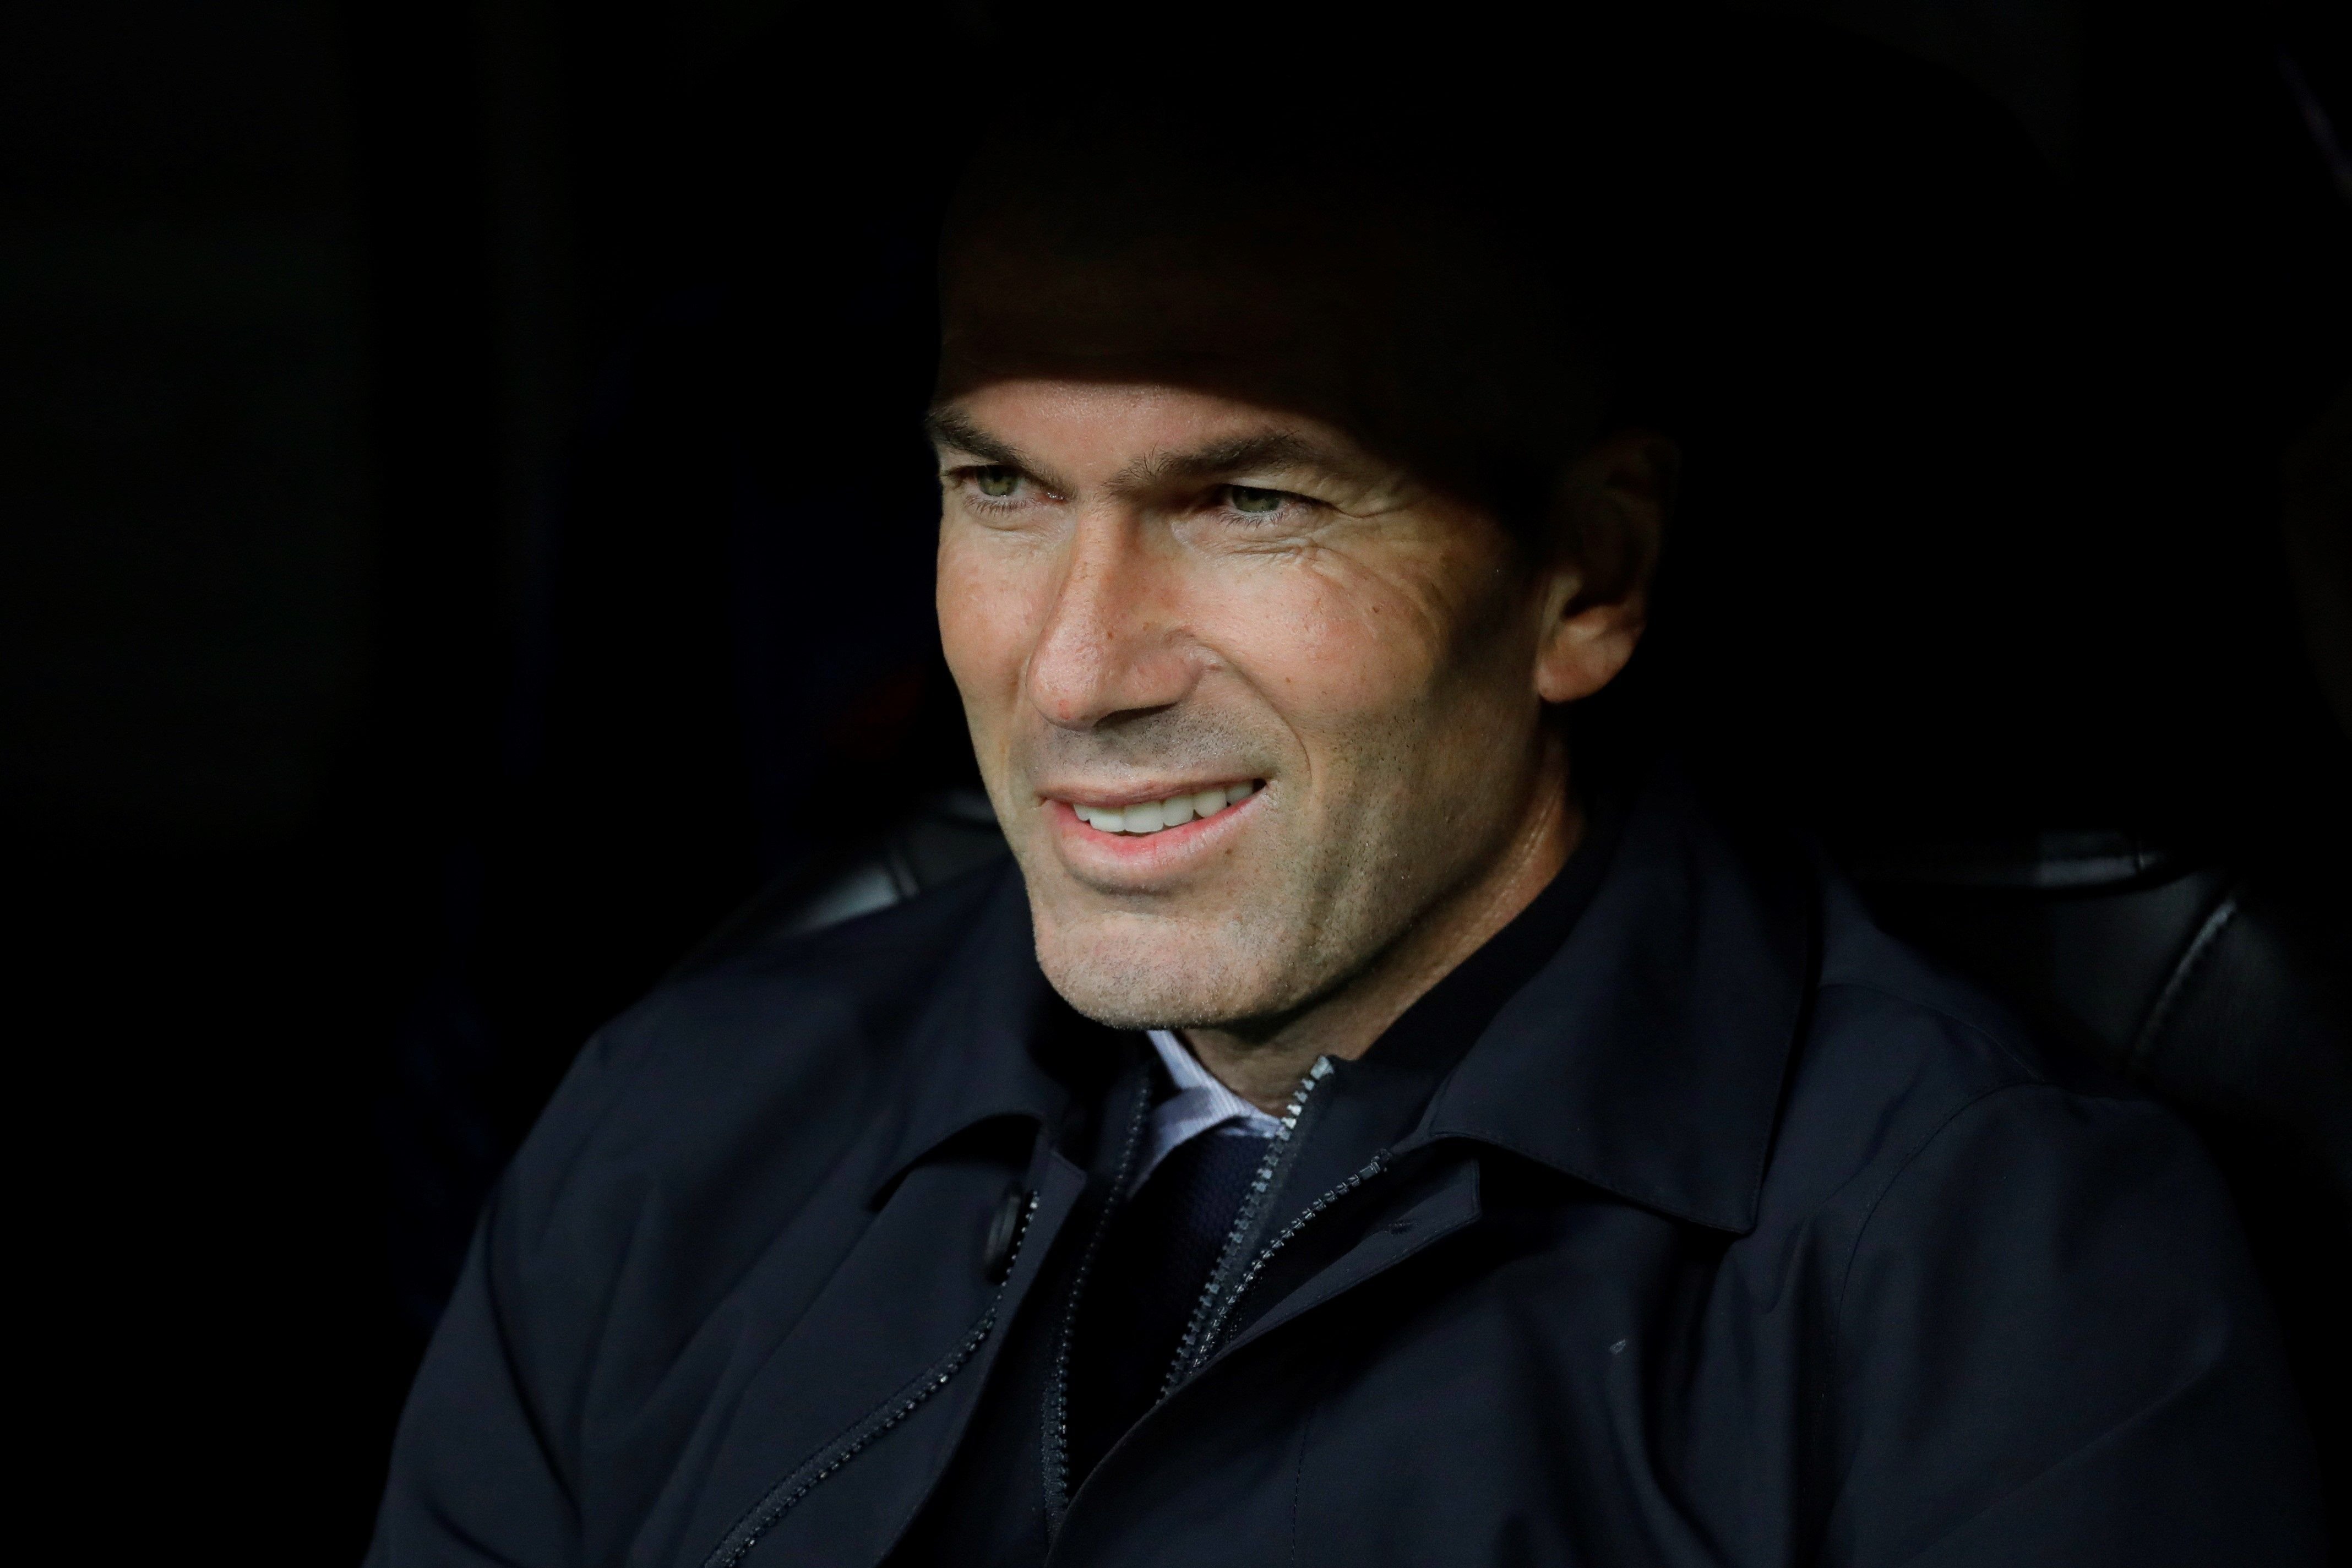 Zidane va demanar un jugador del Barça a Al-Khelaïfi i alternar el PSG amb França per rellevar Pochettino